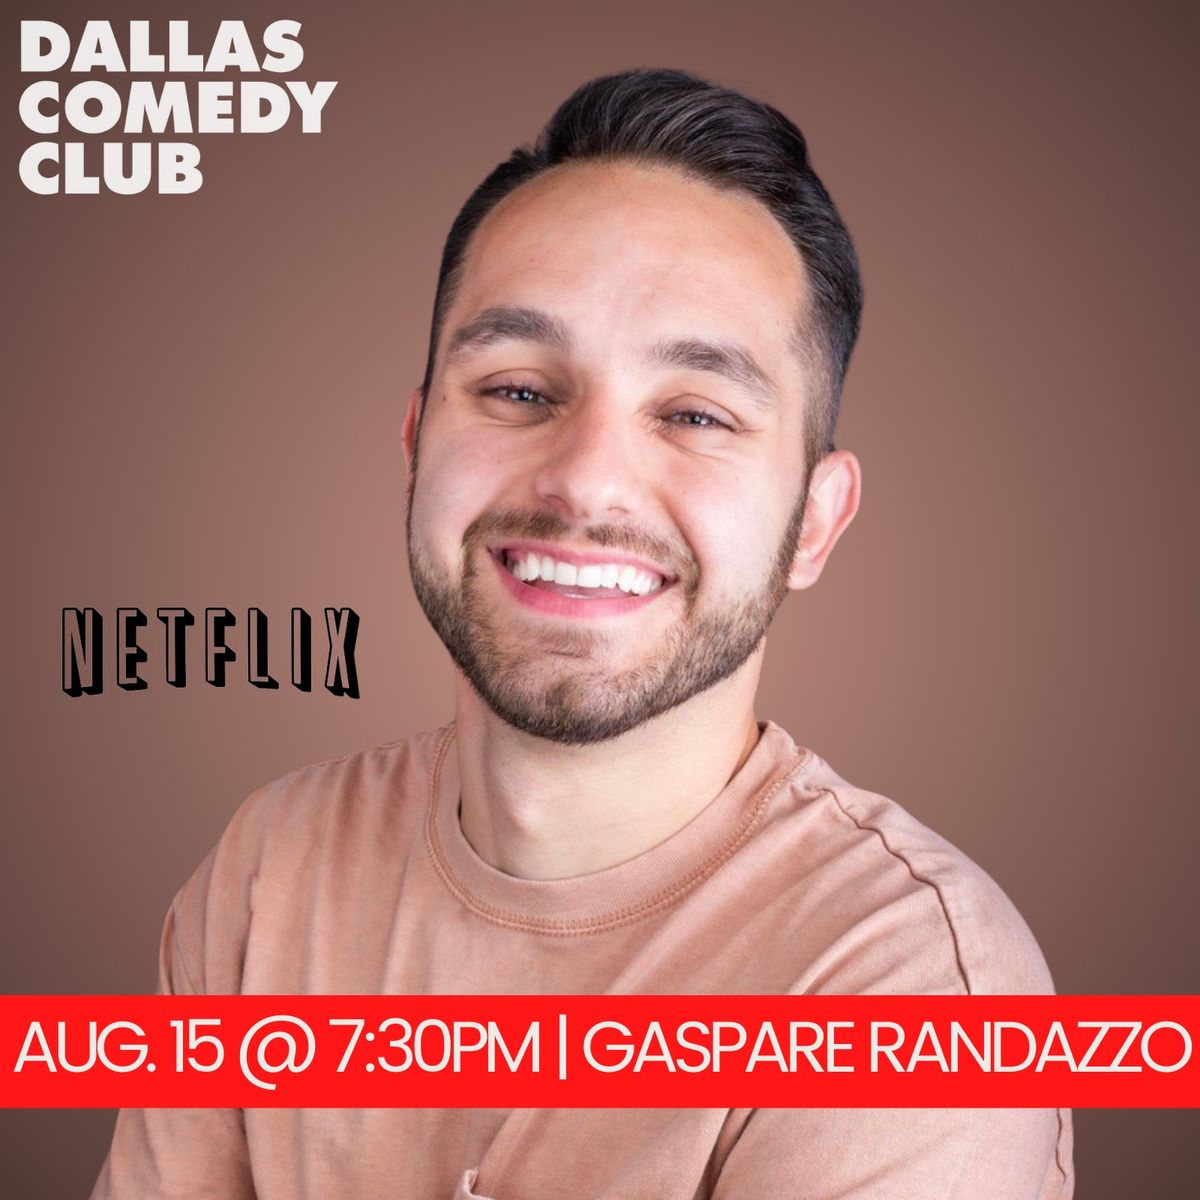 Dallas Comedy Club Presents: Gaspare Randazzo